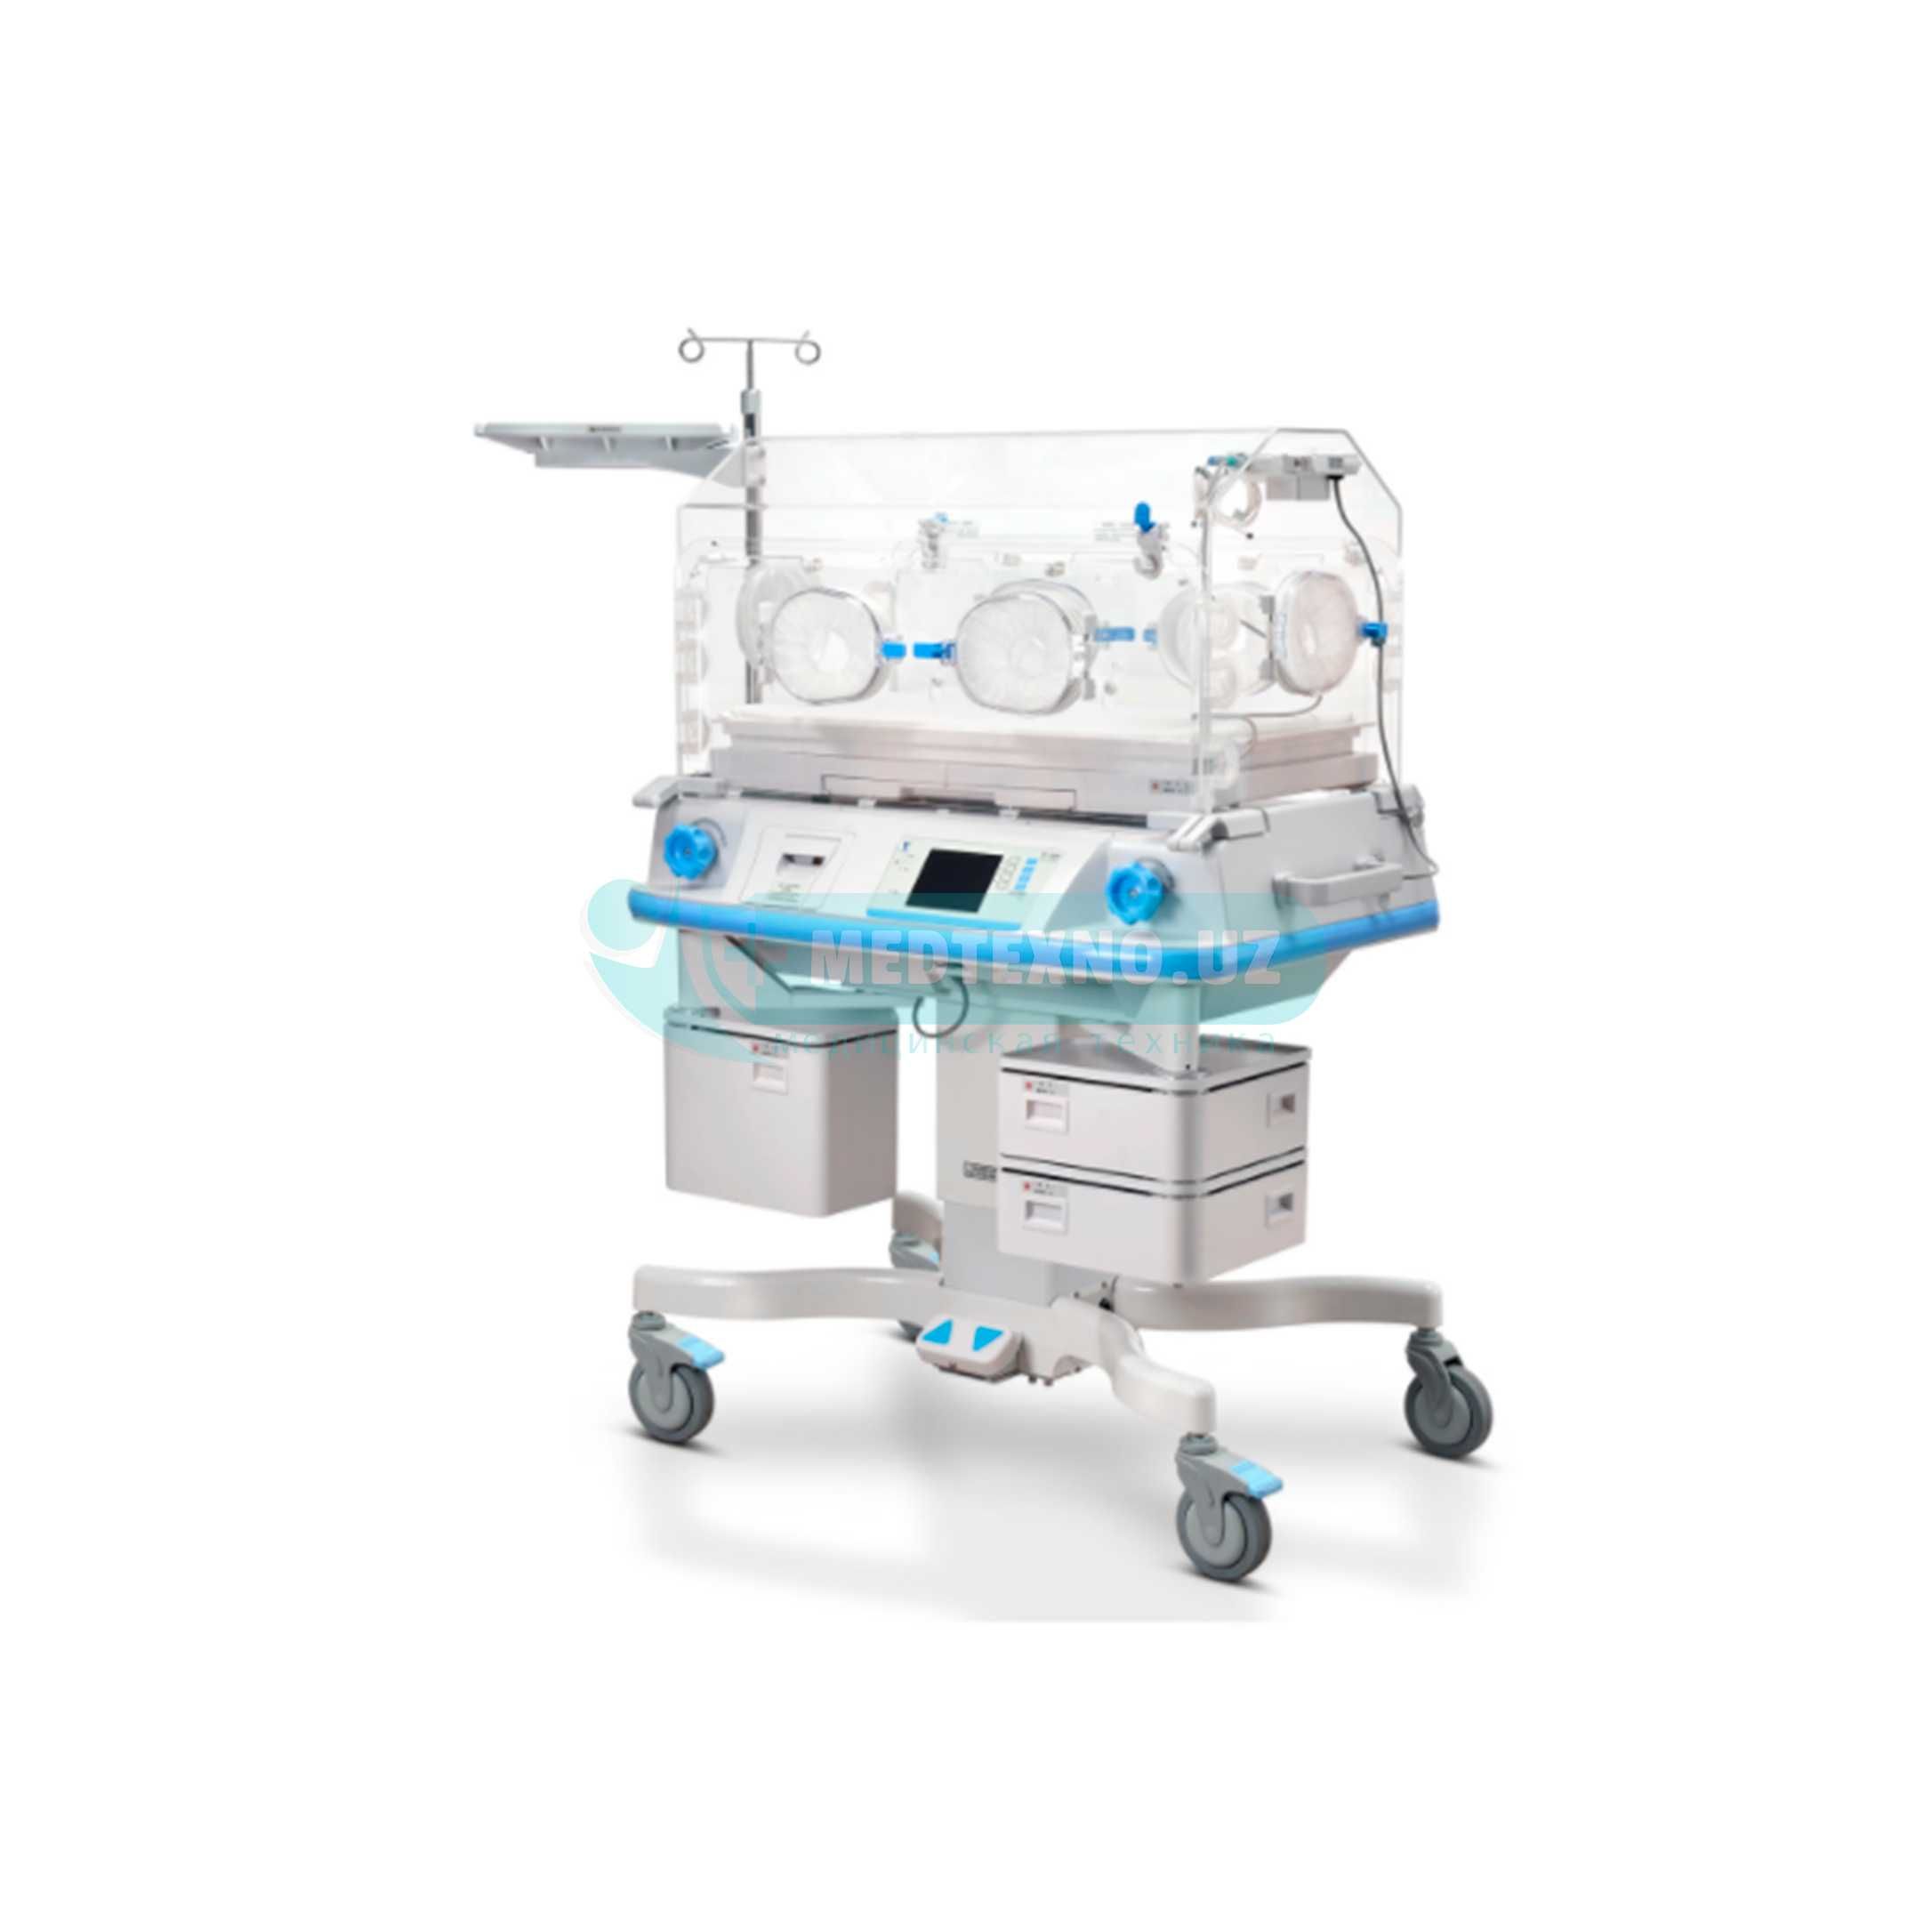 Кувез / Инкубатор интенсивной терапии для новорожденных DAVID YP-2200B